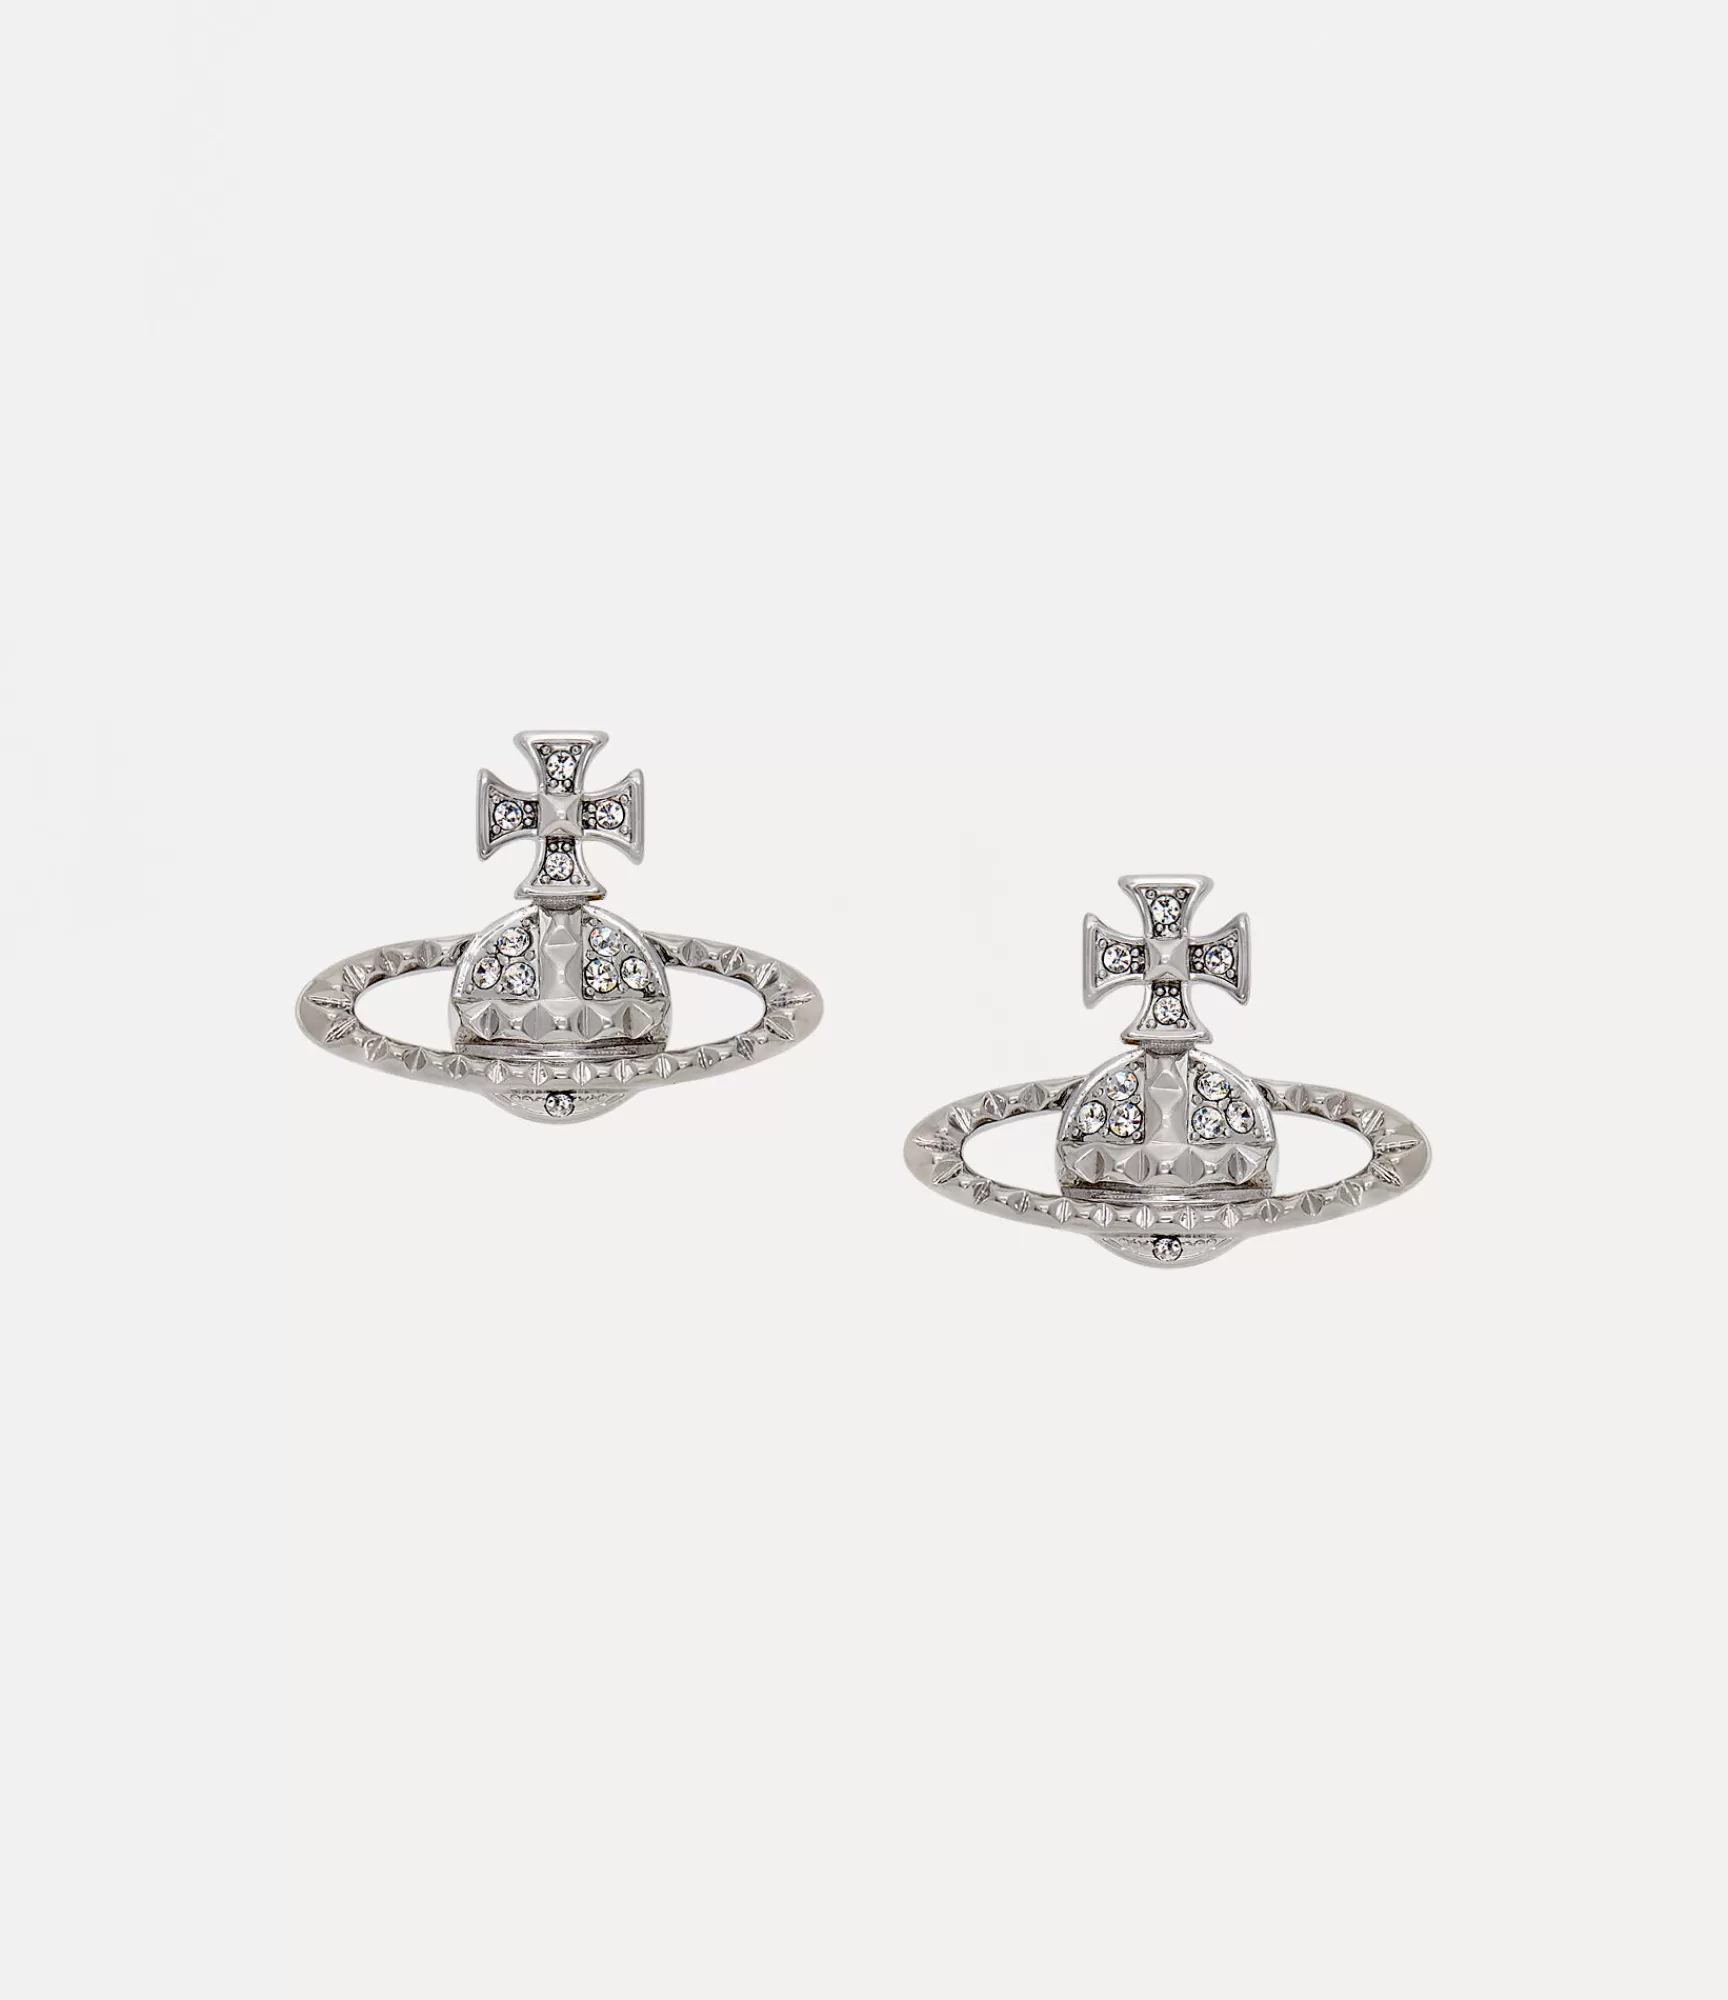 Vivienne Westwood Earrings*Mayfair bas relief earrings Rhodium Crystal